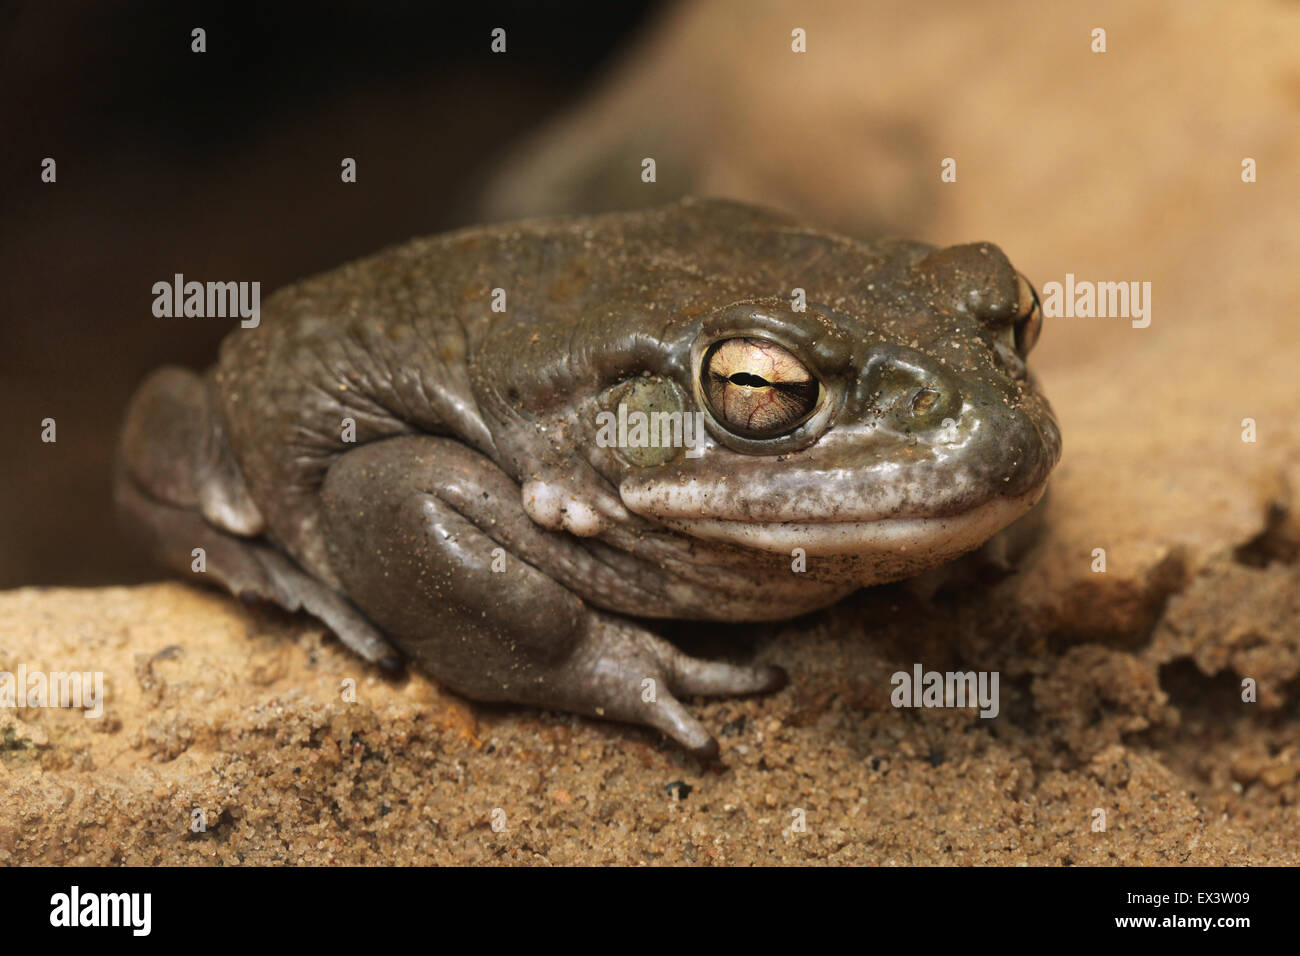 Il fiume Colorado toad (Incilius alvarius), noto anche come il deserto di Sonora toad presso lo Zoo di Francoforte in Frankfurt am Main, Germania. Foto Stock